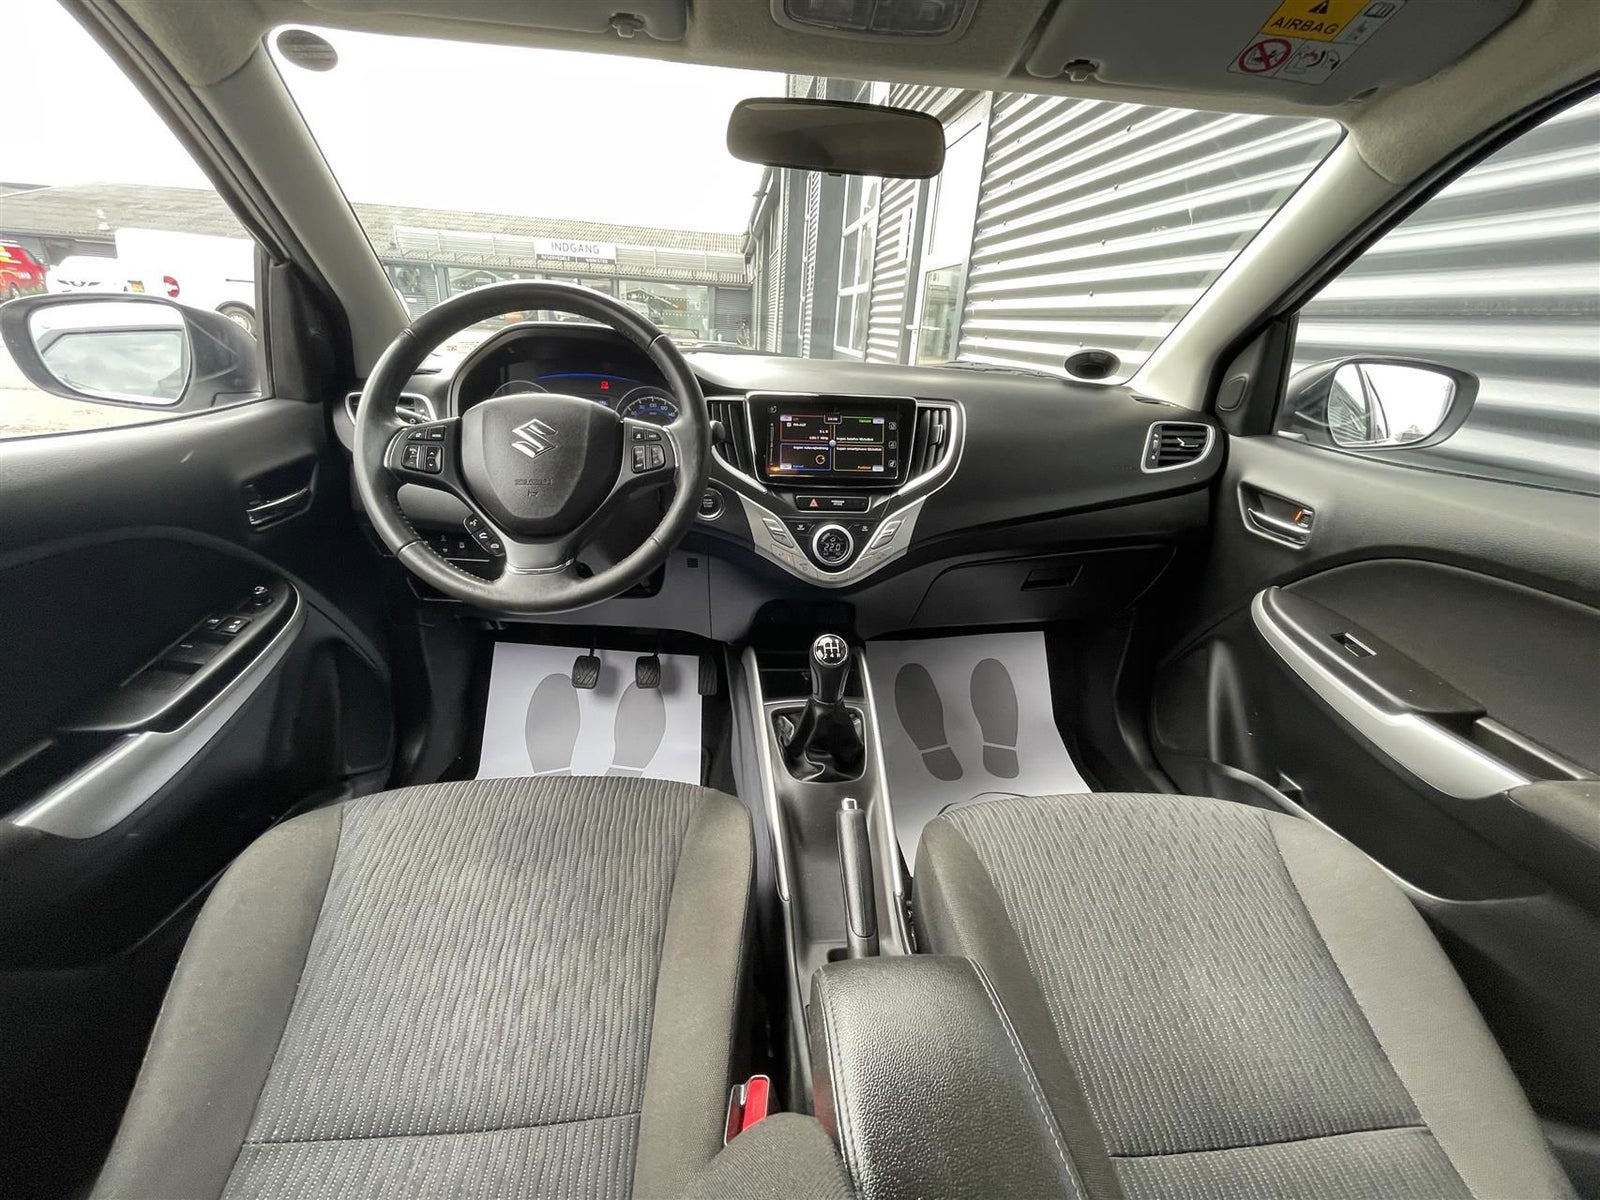 Suzuki Baleno 1,2 Dualjet mHybrid Exclusive Benzin